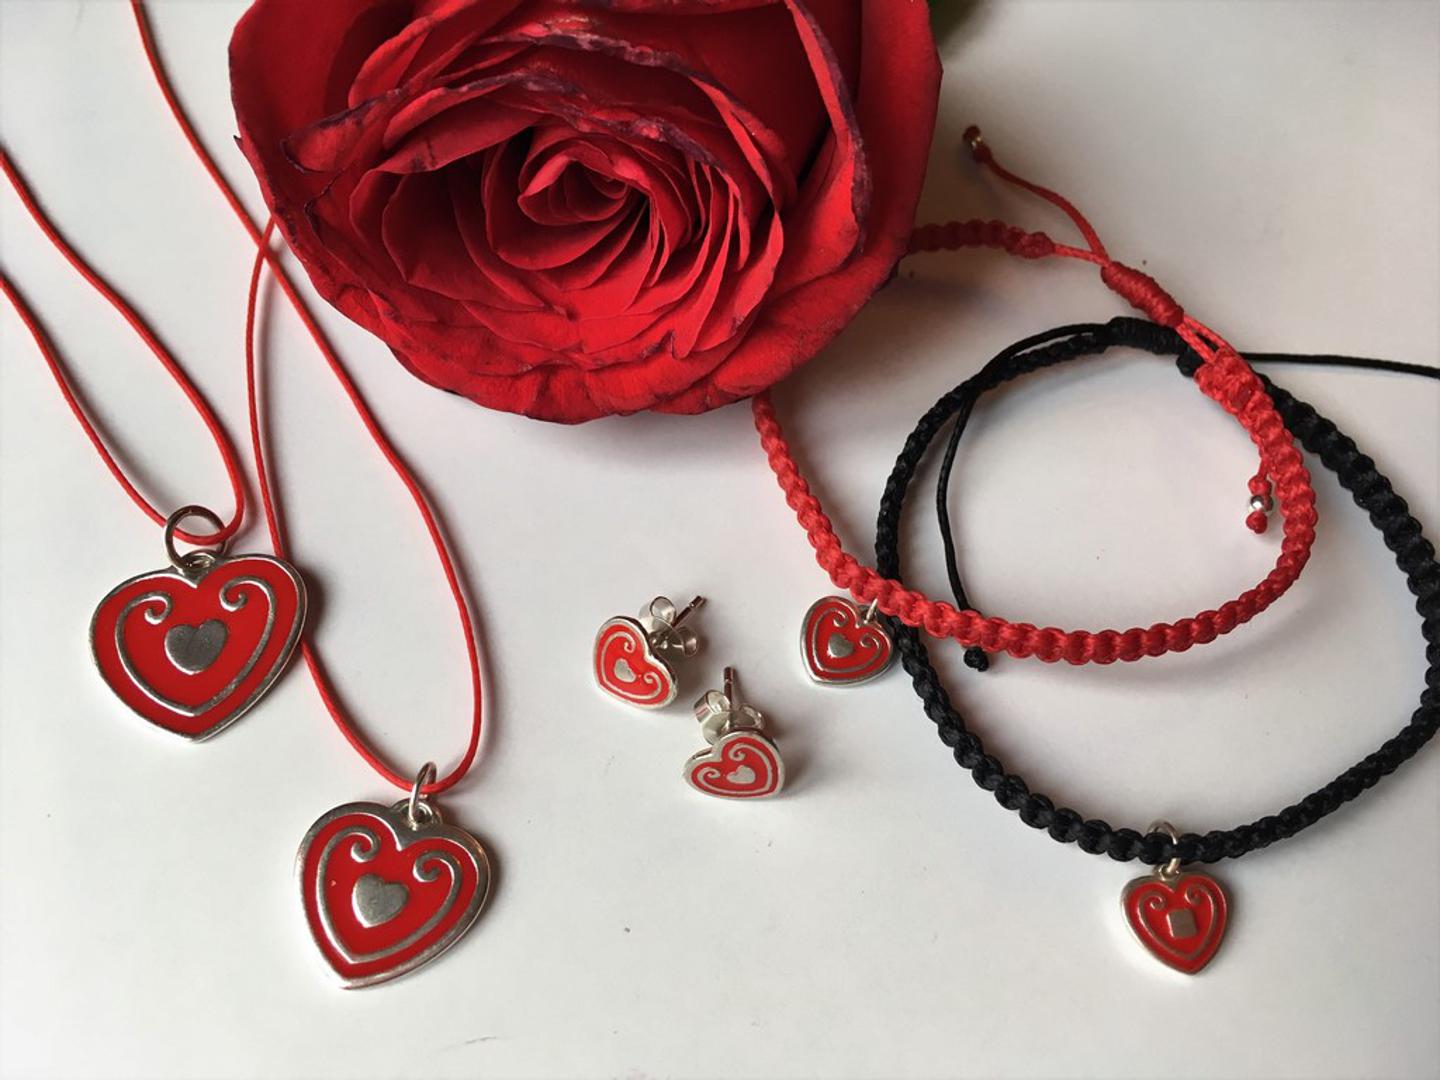 Licitarsko srce oduvijek je tradicionalno bilo znak simpatije i ljubavi, a u ovoj poznatoj zagrebačkoj radionici nakita napravili su od njega vrlo moderne i prelijepe komade nakita koji osvajaju i najtvrđa srca